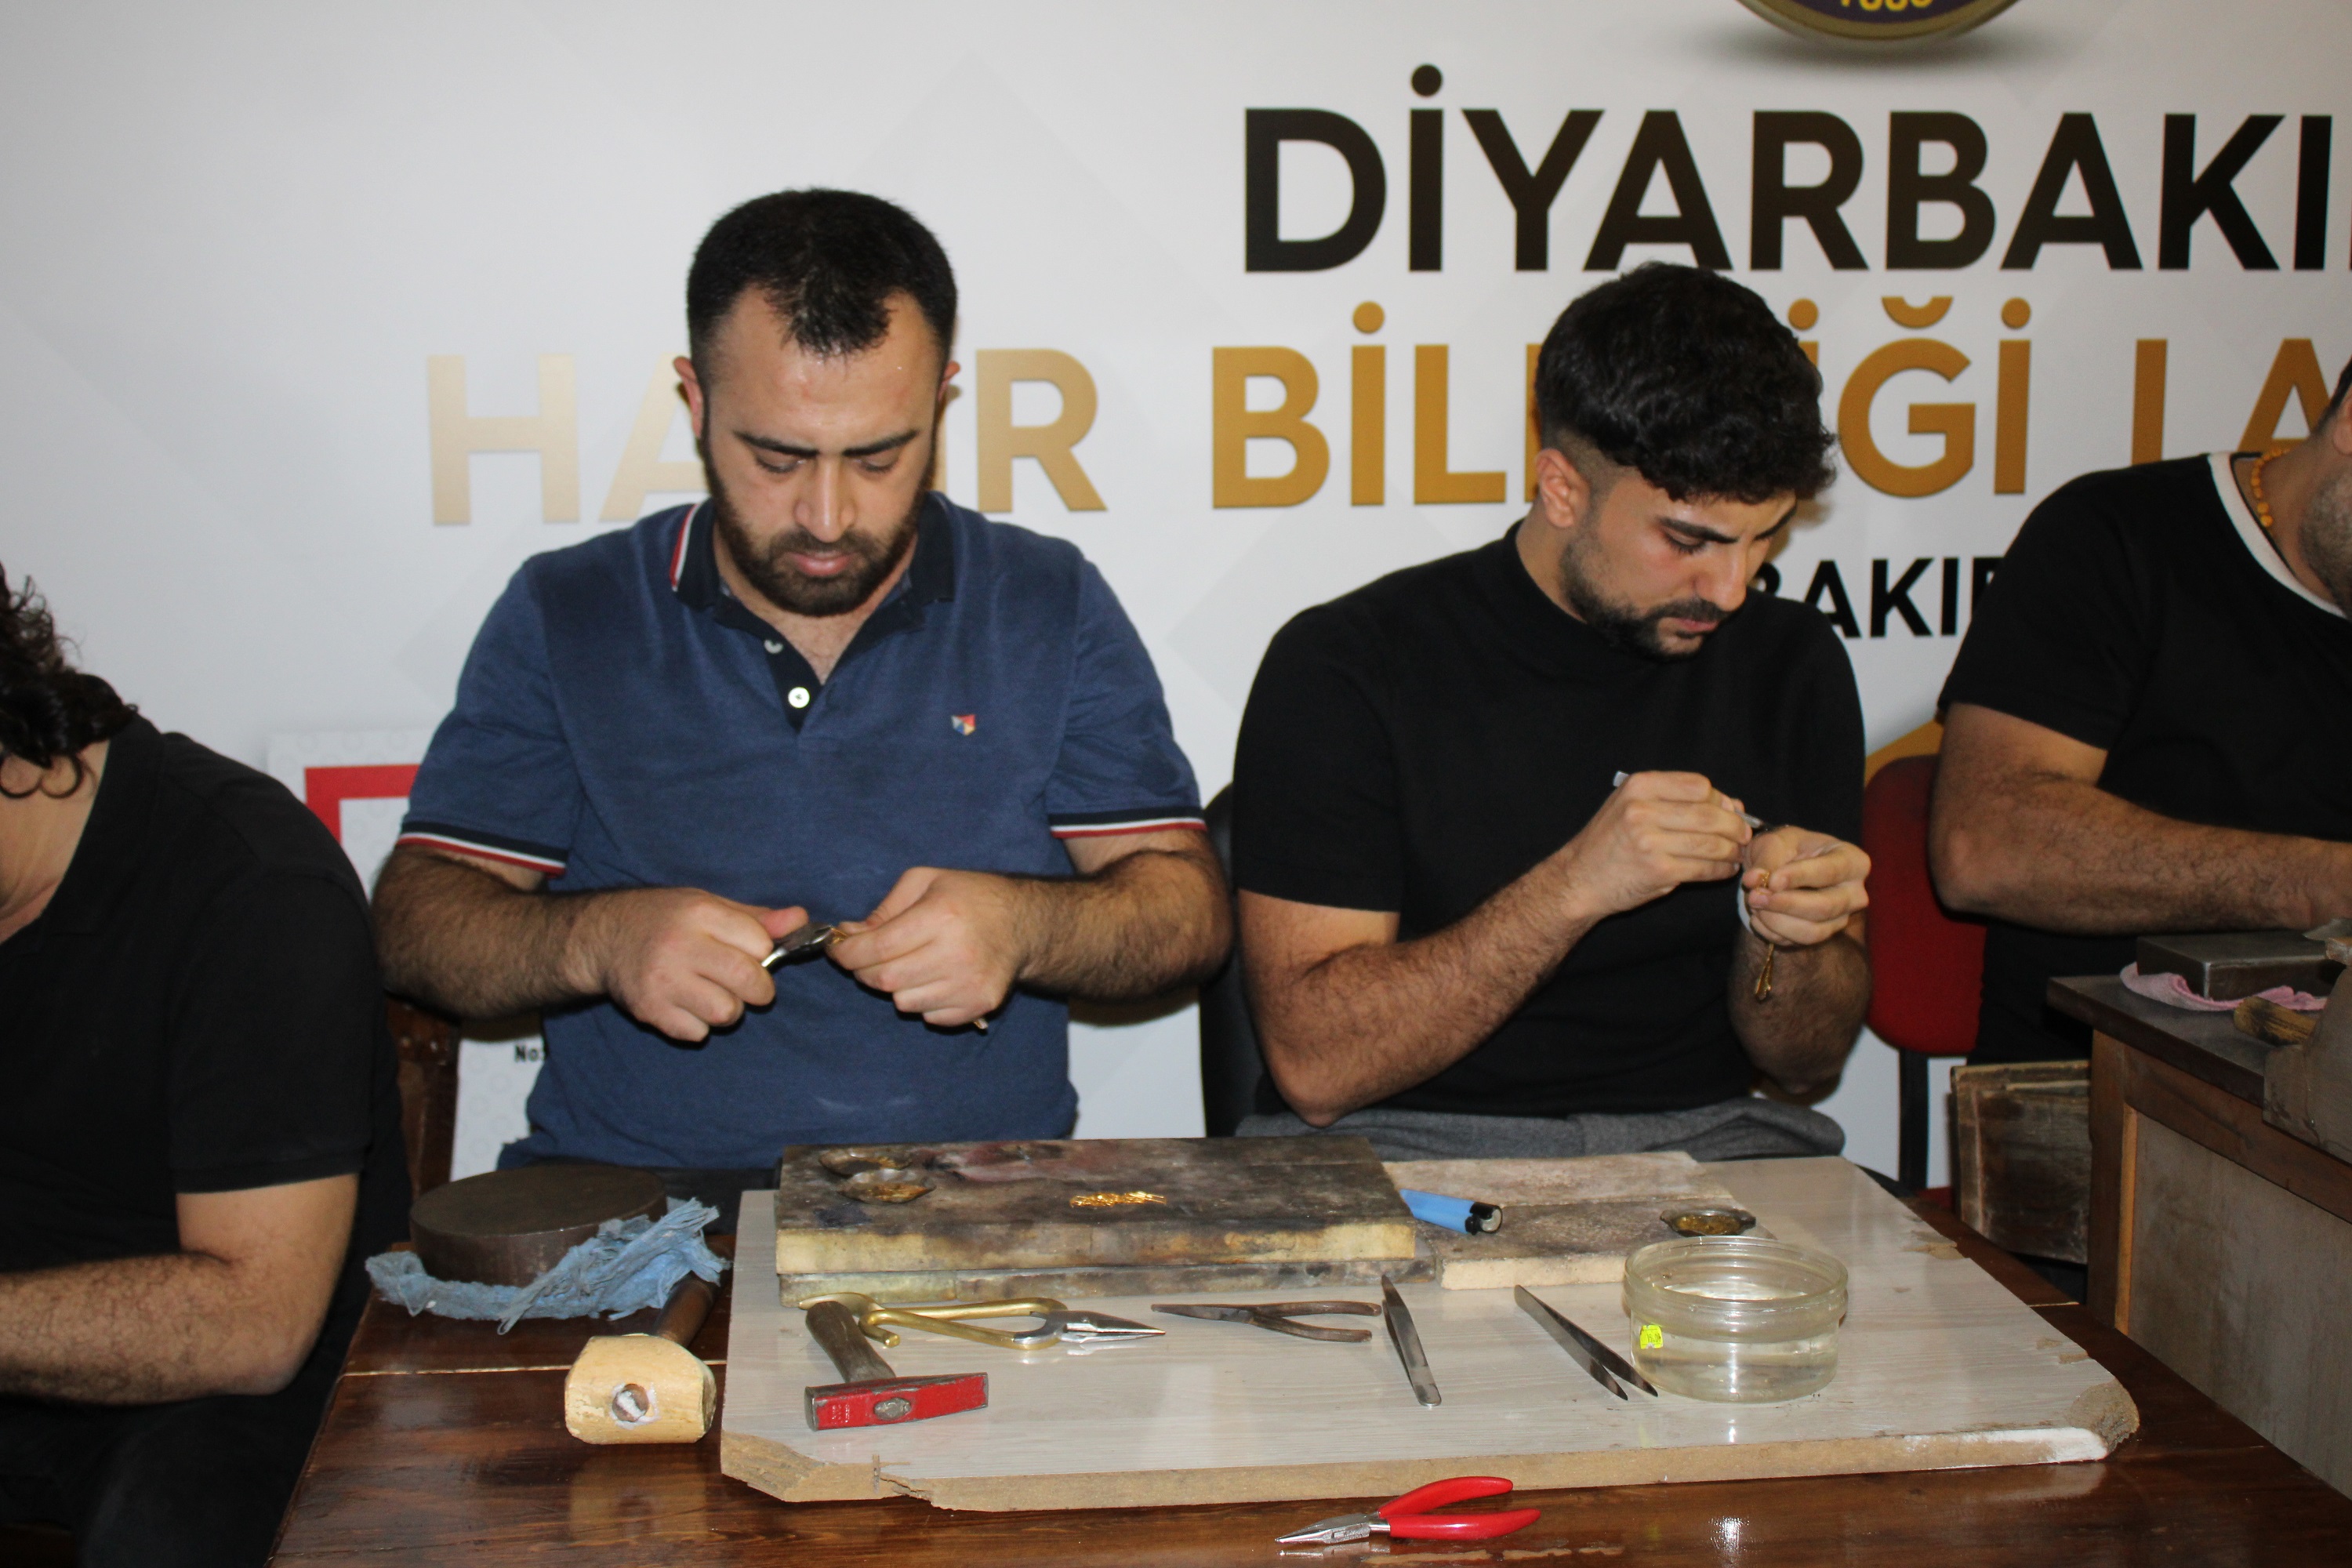 diyarbakir-hasir-bilezigi-cografi-isaretle-tescillendi-yenicag5.jpg